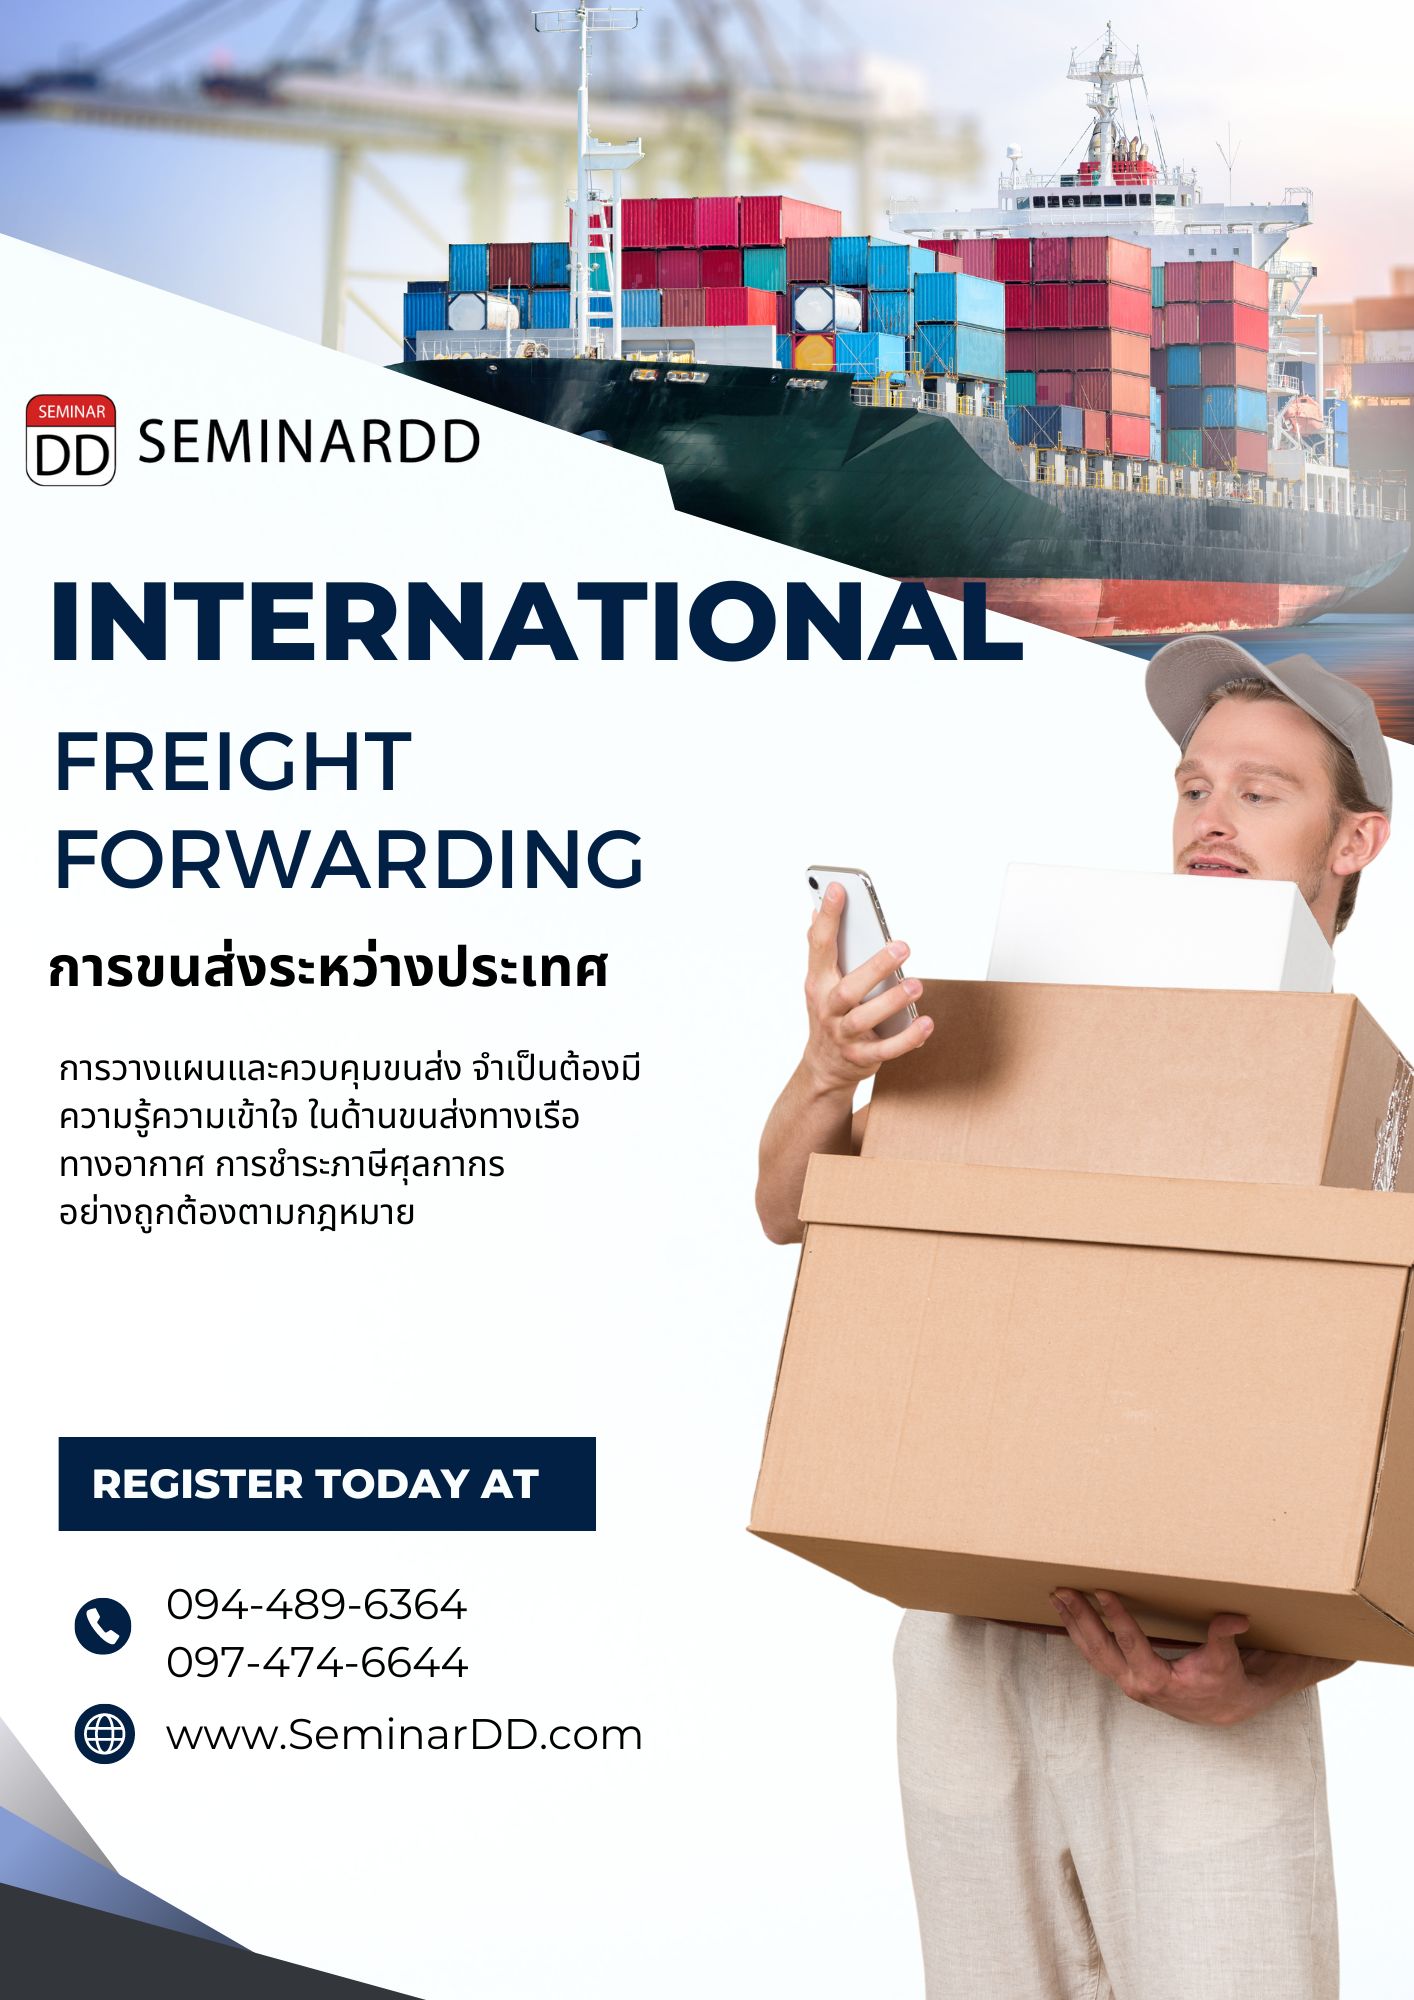 หลักสูตรอบรม หลักสูตรอบรม : การขนส่งระหว่างประเทศ  ( International Freight Forwarding )